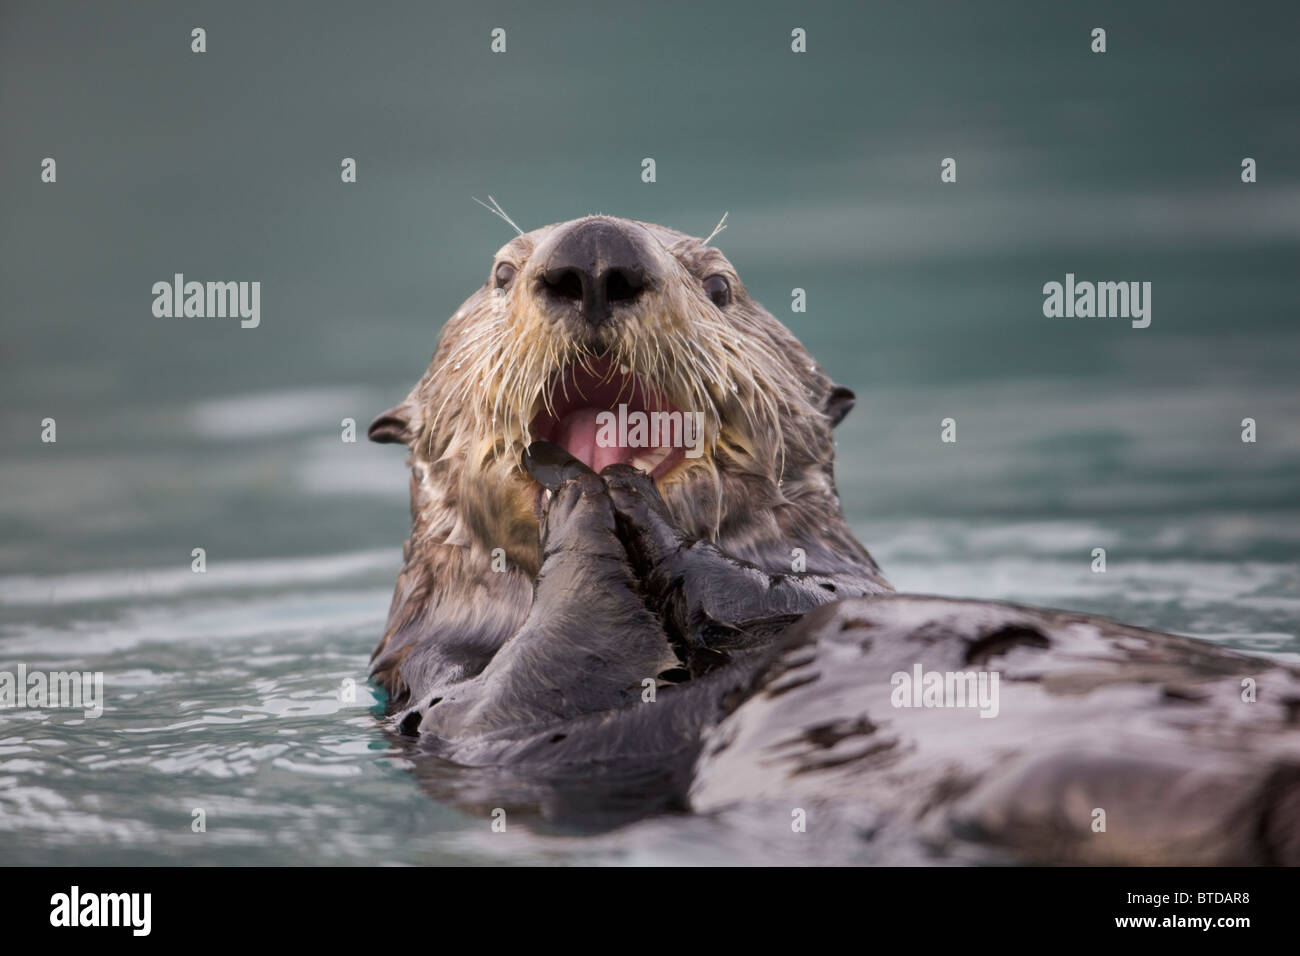 Vue rapprochée d'une loutre de mer qui flotte sur le dos tout en mangeant une moule à Prince William Sound, Alaska, Southcentral, automne Banque D'Images